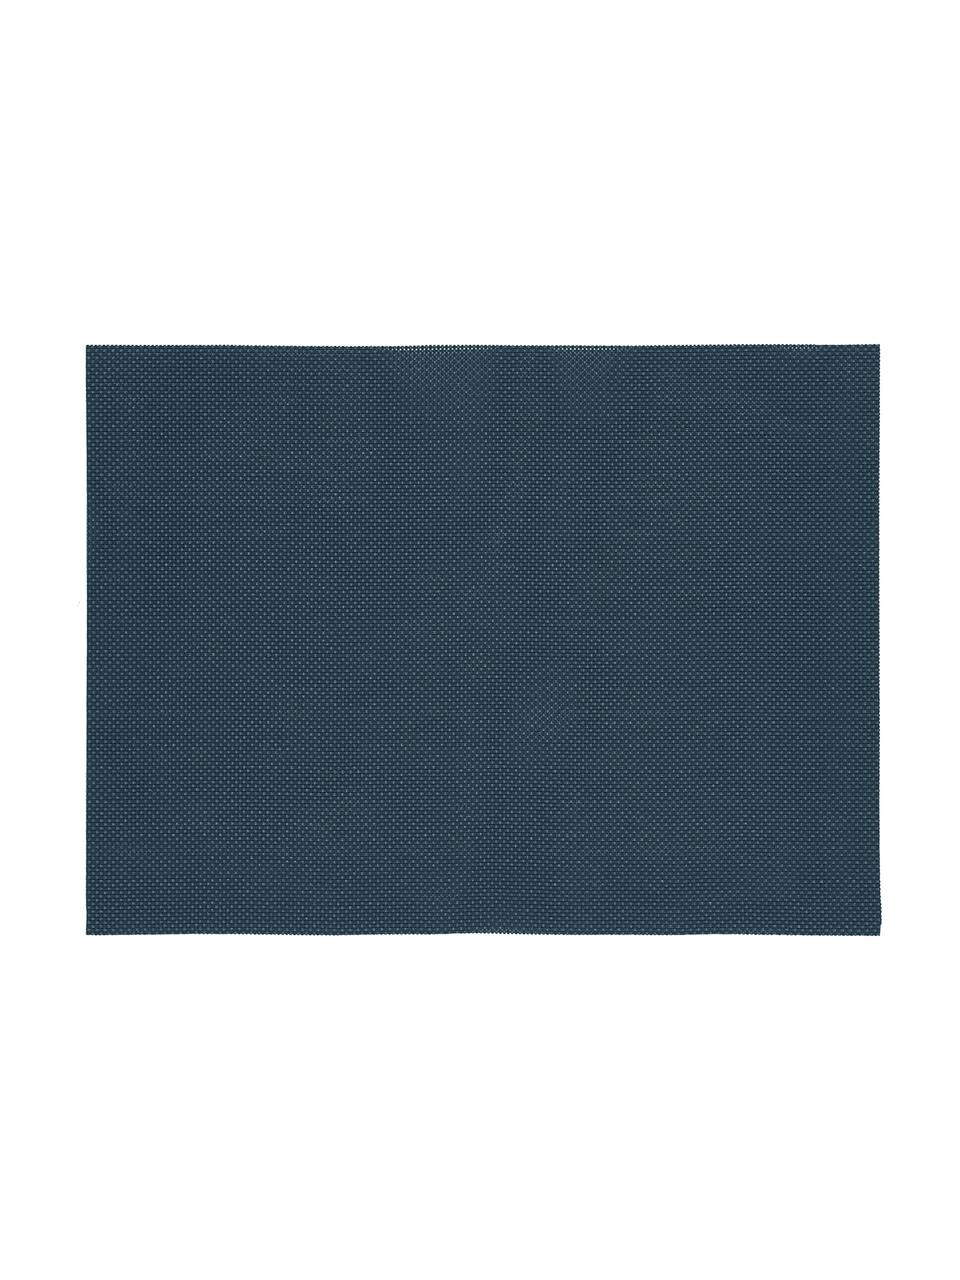 Podkładka Mabra, 6 szt., Tworzywo sztuczne (PVC), Ciemny niebieski, S 30 x D 40 cm